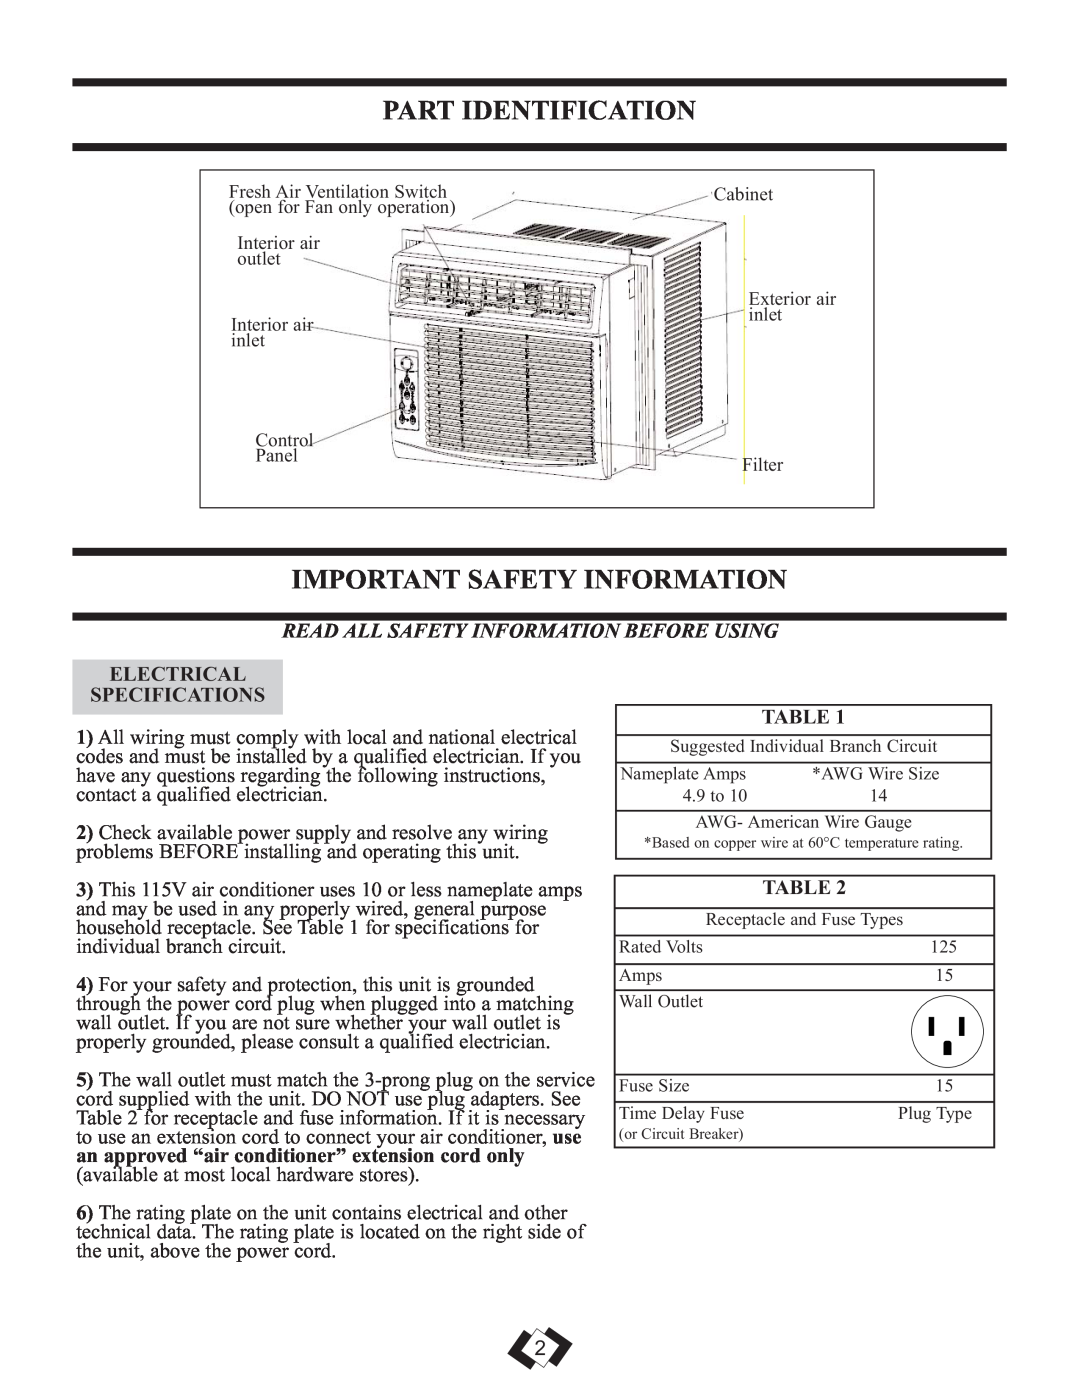 Danby DAC8010E, DAC10010E Part Identification, Important Safety Information, Read All Safety Information Before Using 